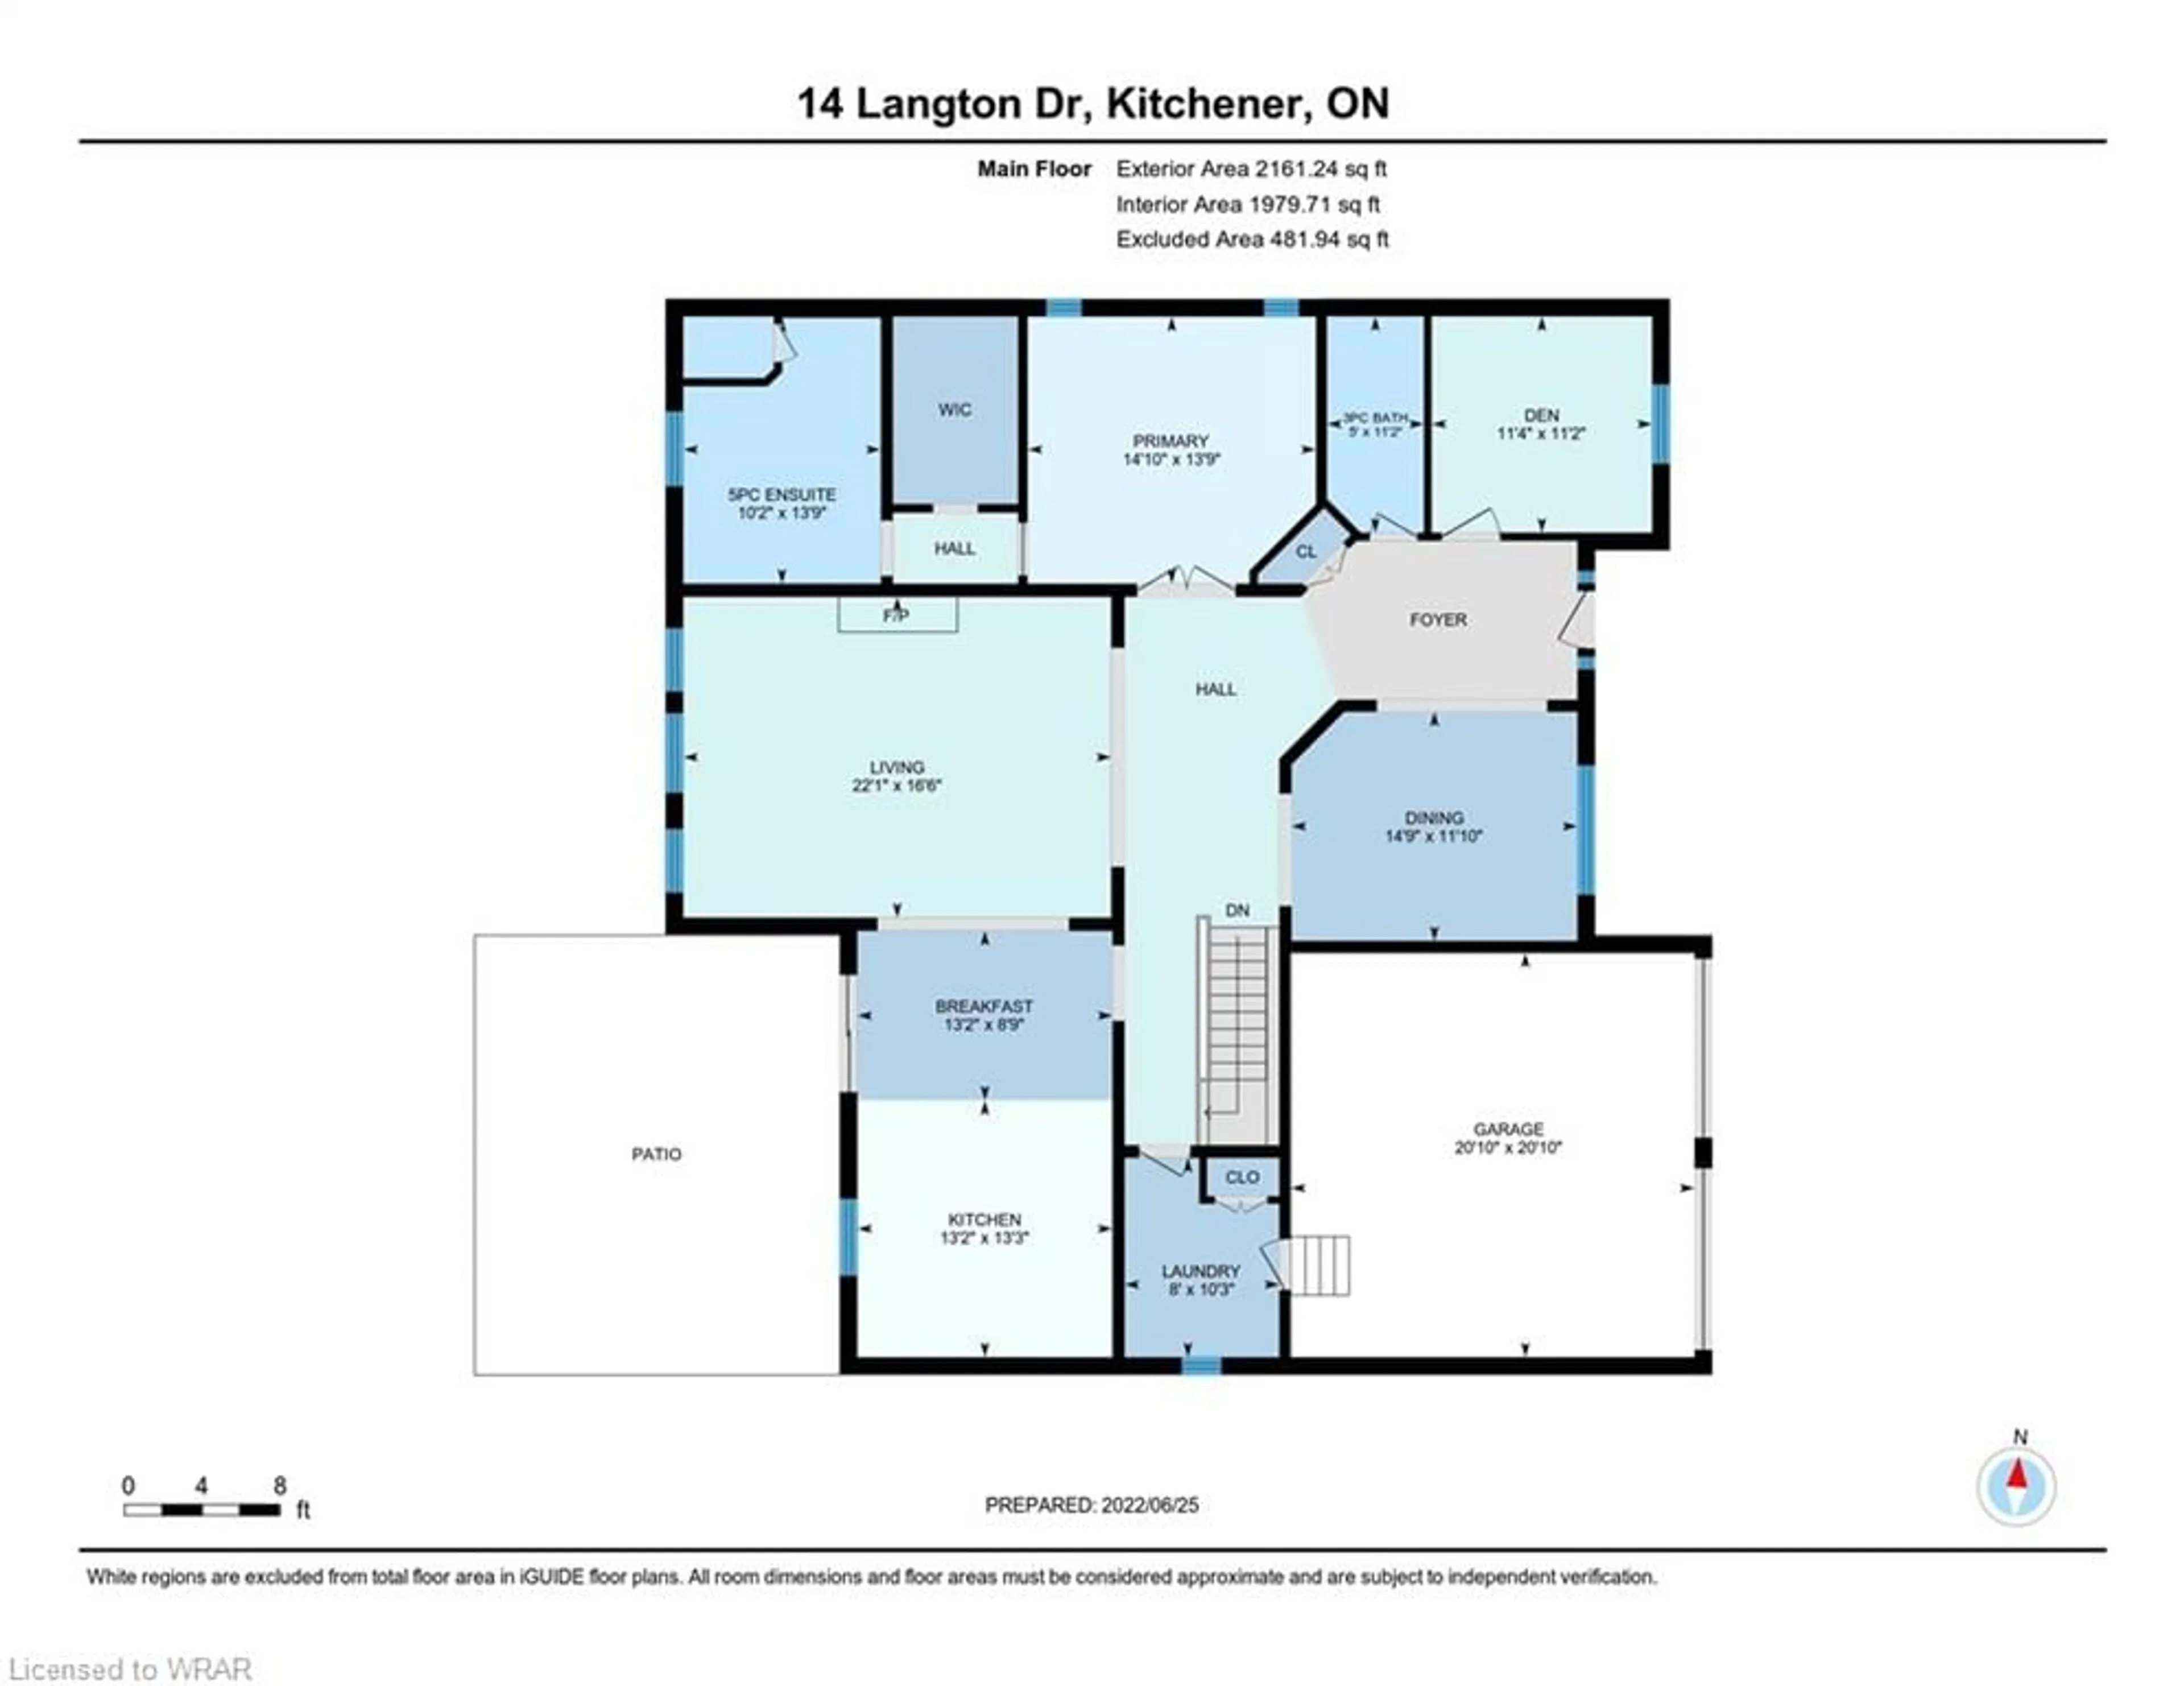 Floor plan for 14 Langton Dr, Kitchener Ontario N2P 2X9